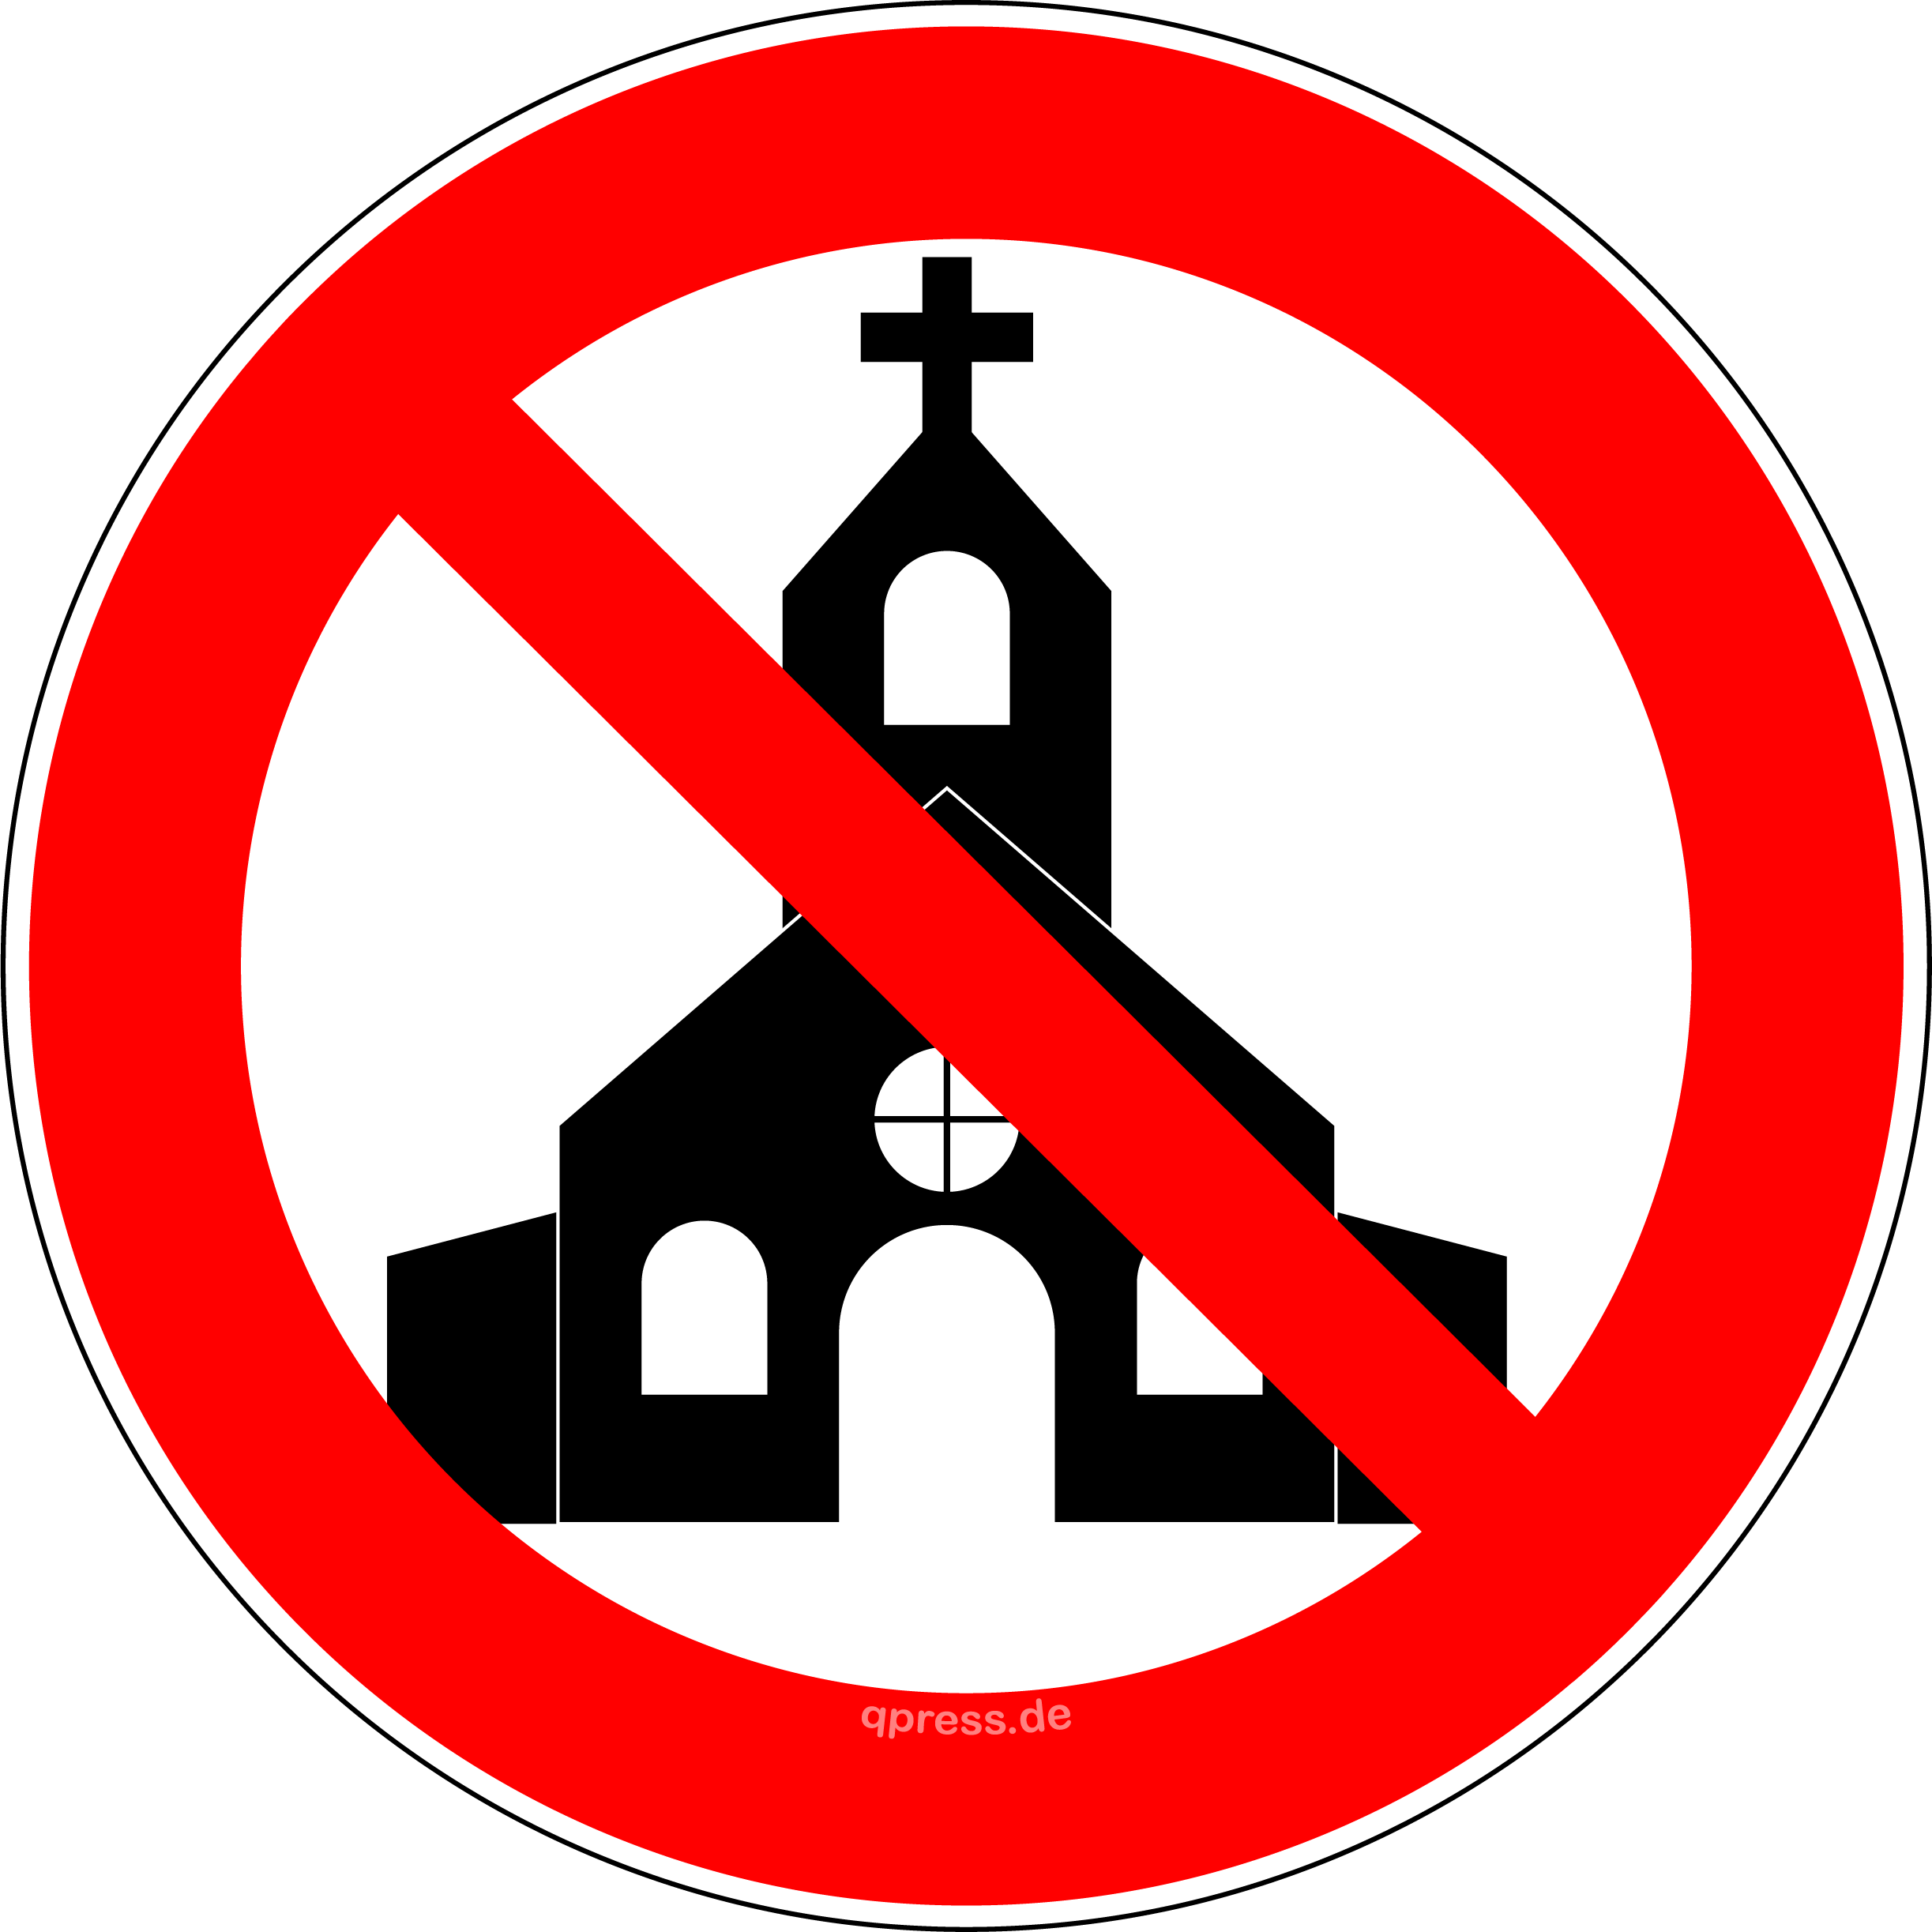 kirche-verbot-glauben-fehler-gesellschaft-zwang-ausbeutung-irrefuehrung-vatikan-priester-islamisierung-moschee-minarette-kirchtuerme